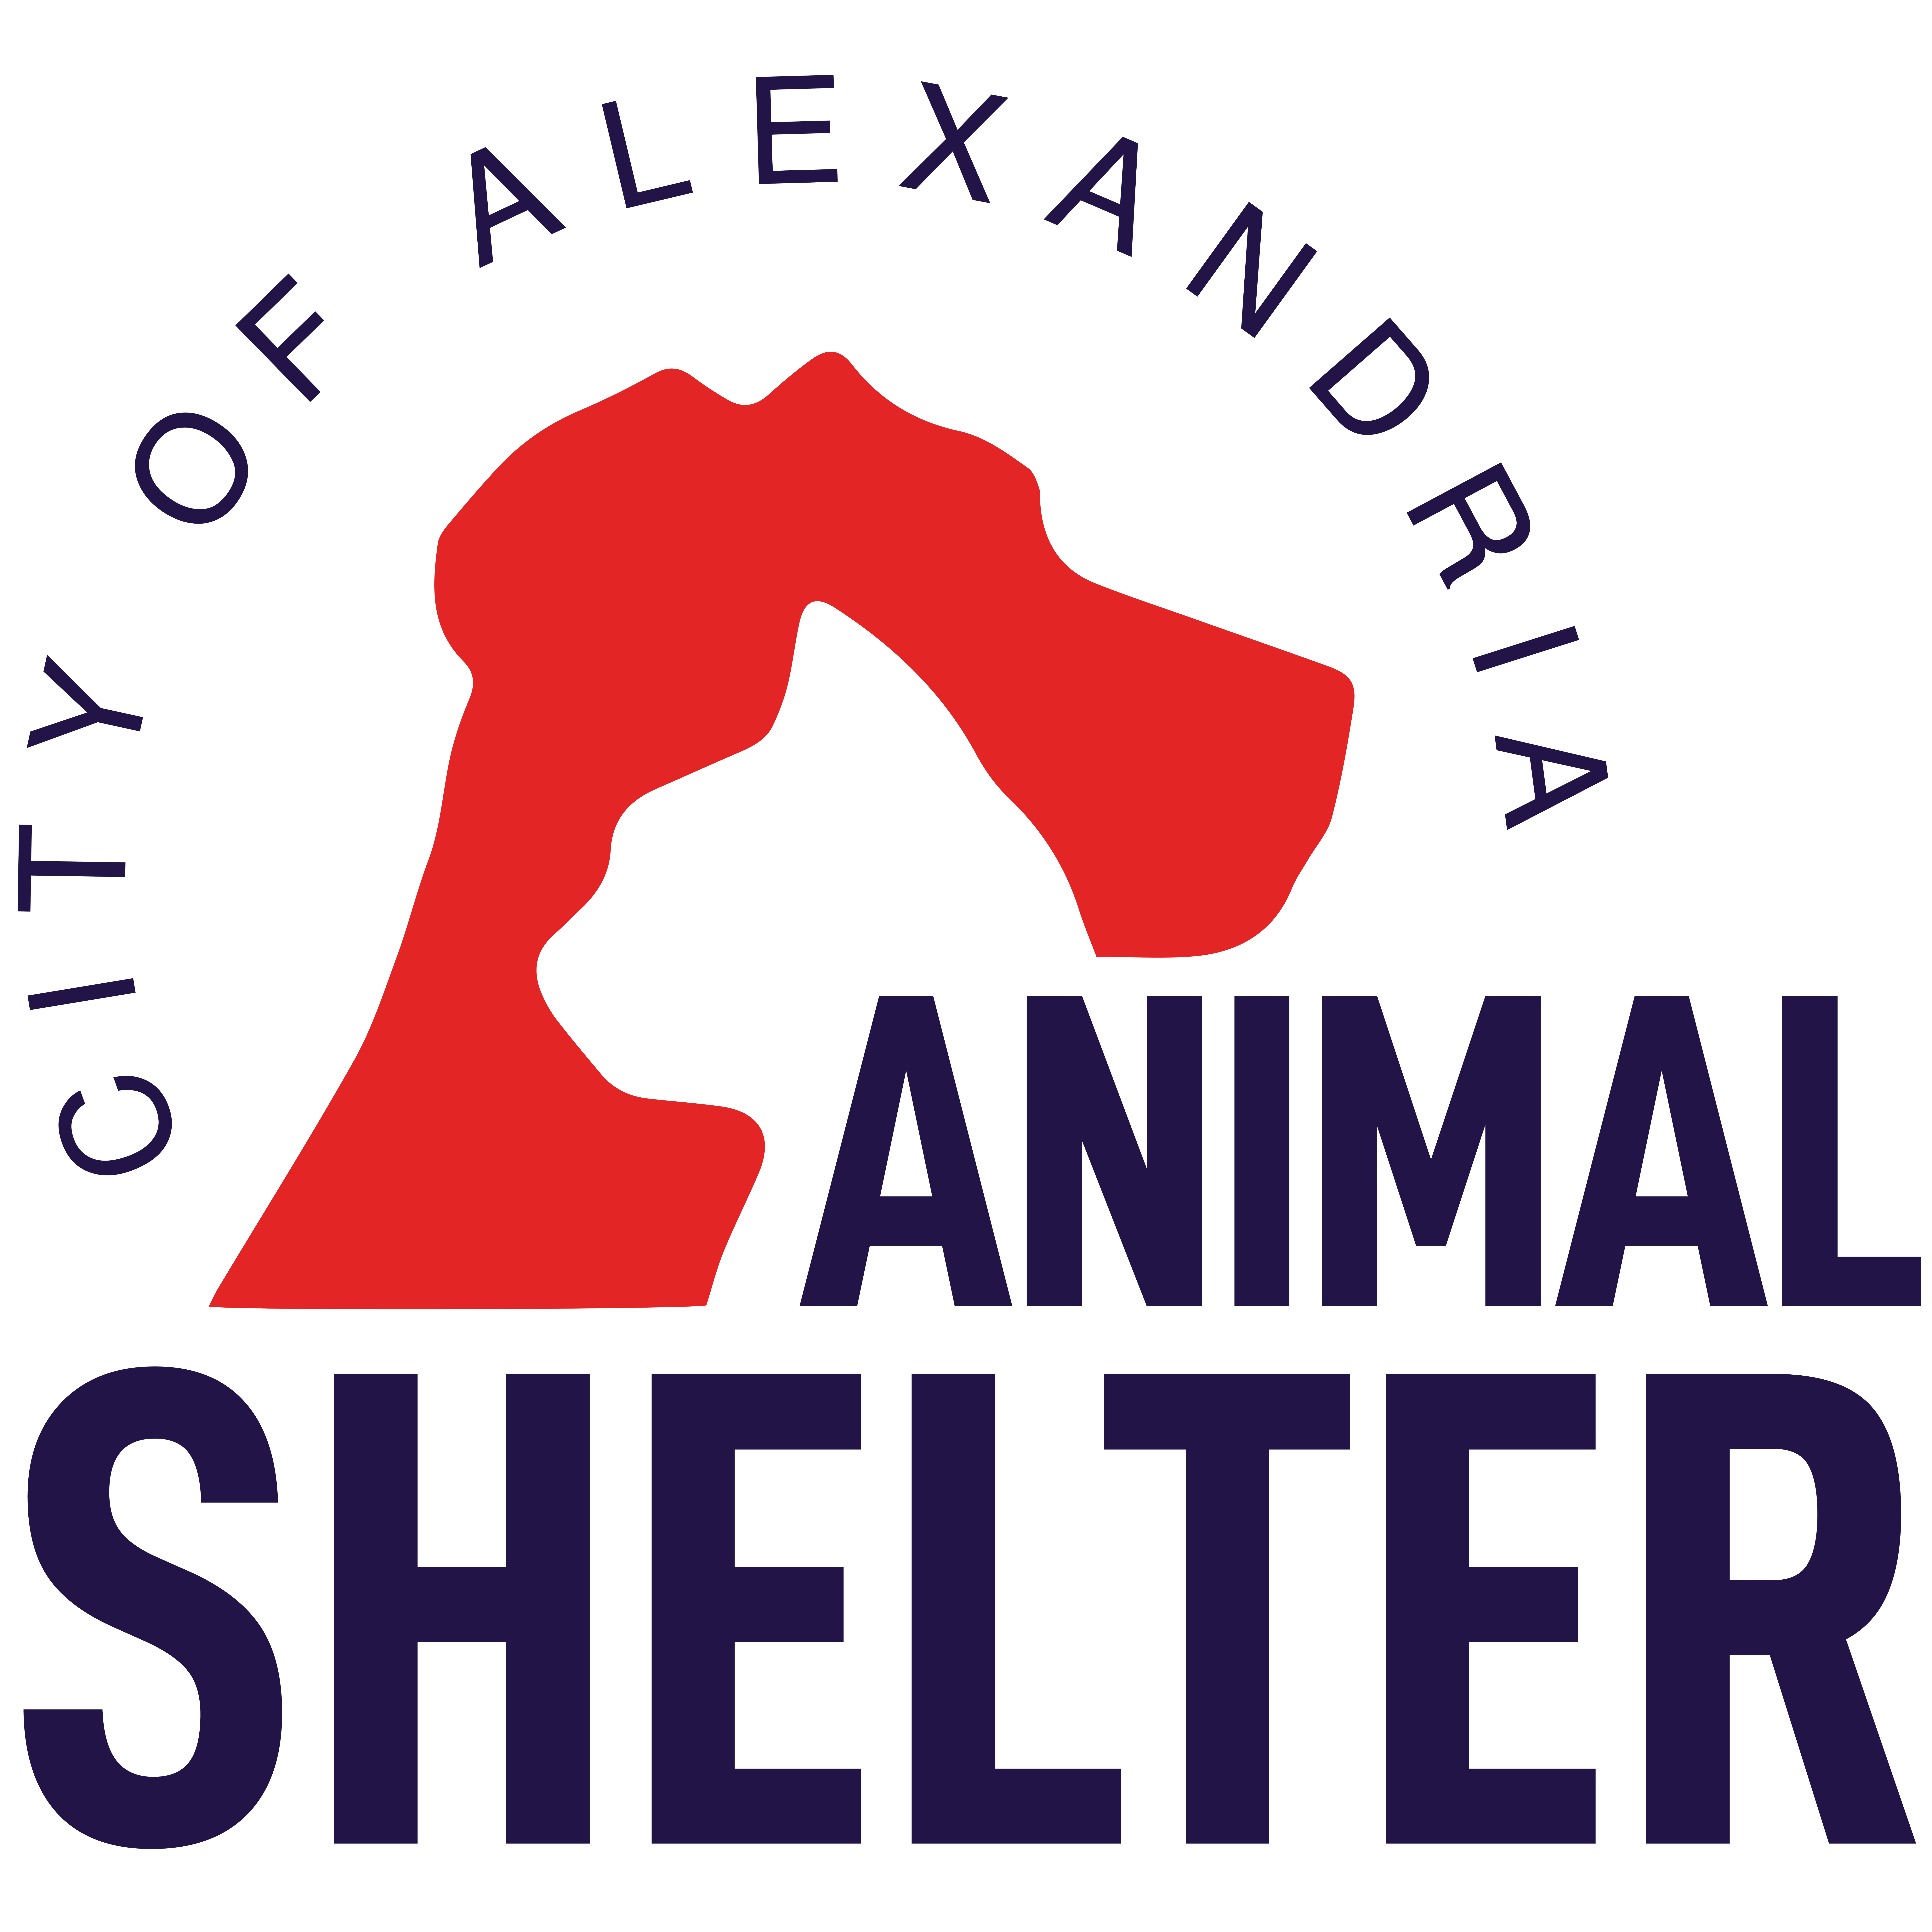 City of Alexandra Animal Shelter - City of Alexandria, La - Cenla Ready